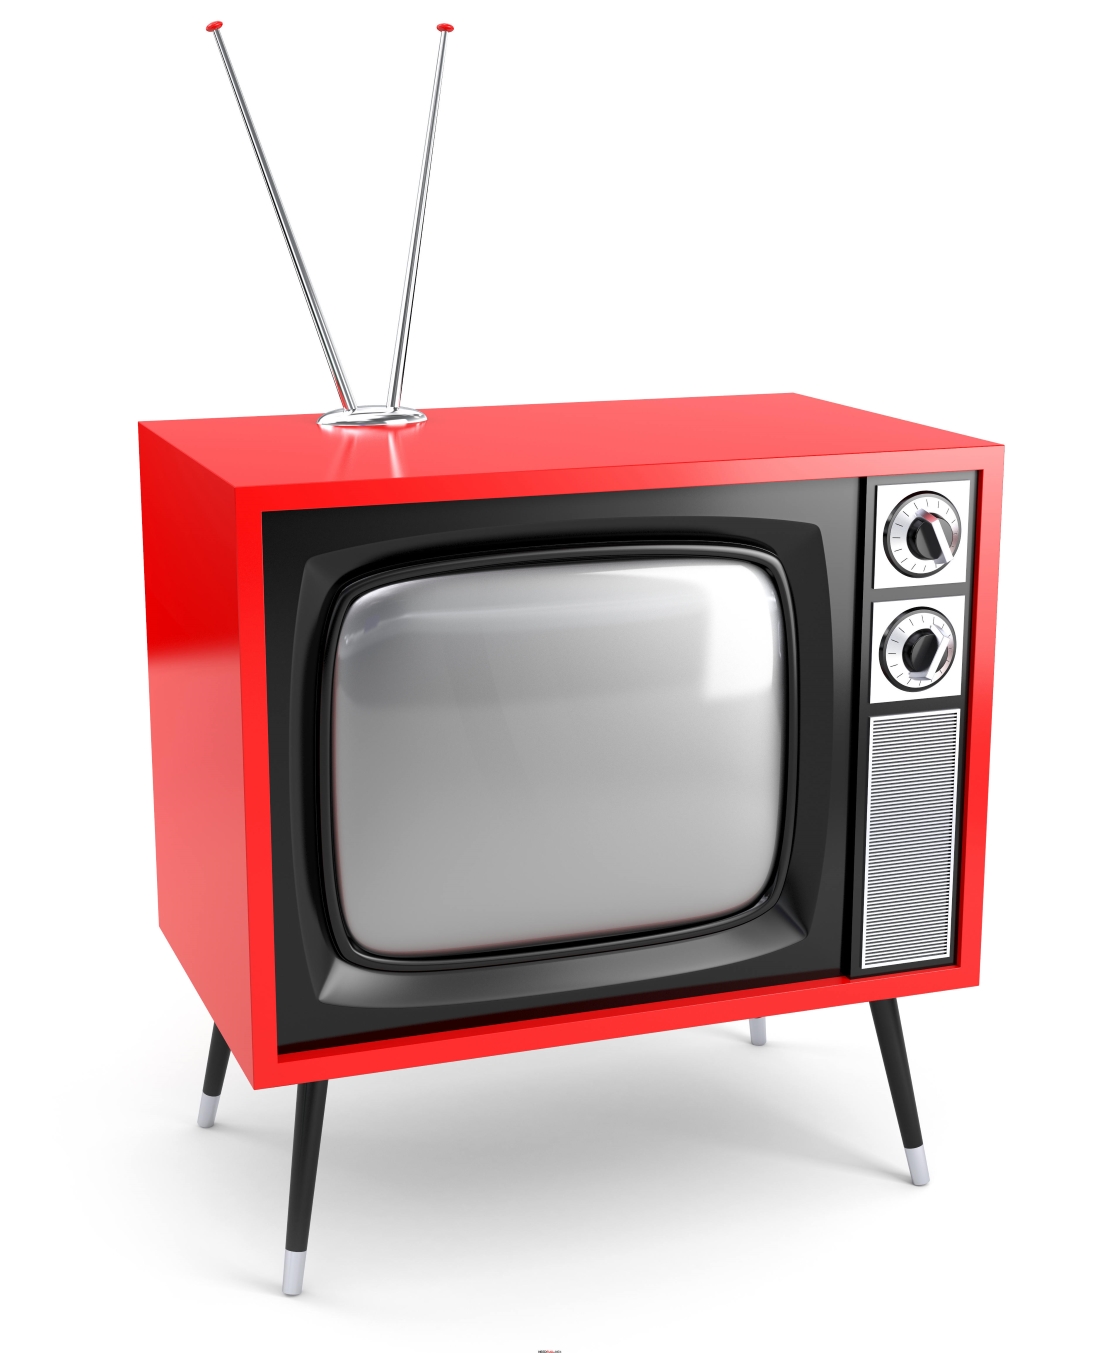 Изображение телевизора красное. Старый телевизор. Старинный телевизор. Красный телевизор. Старый телевизор с антенной.